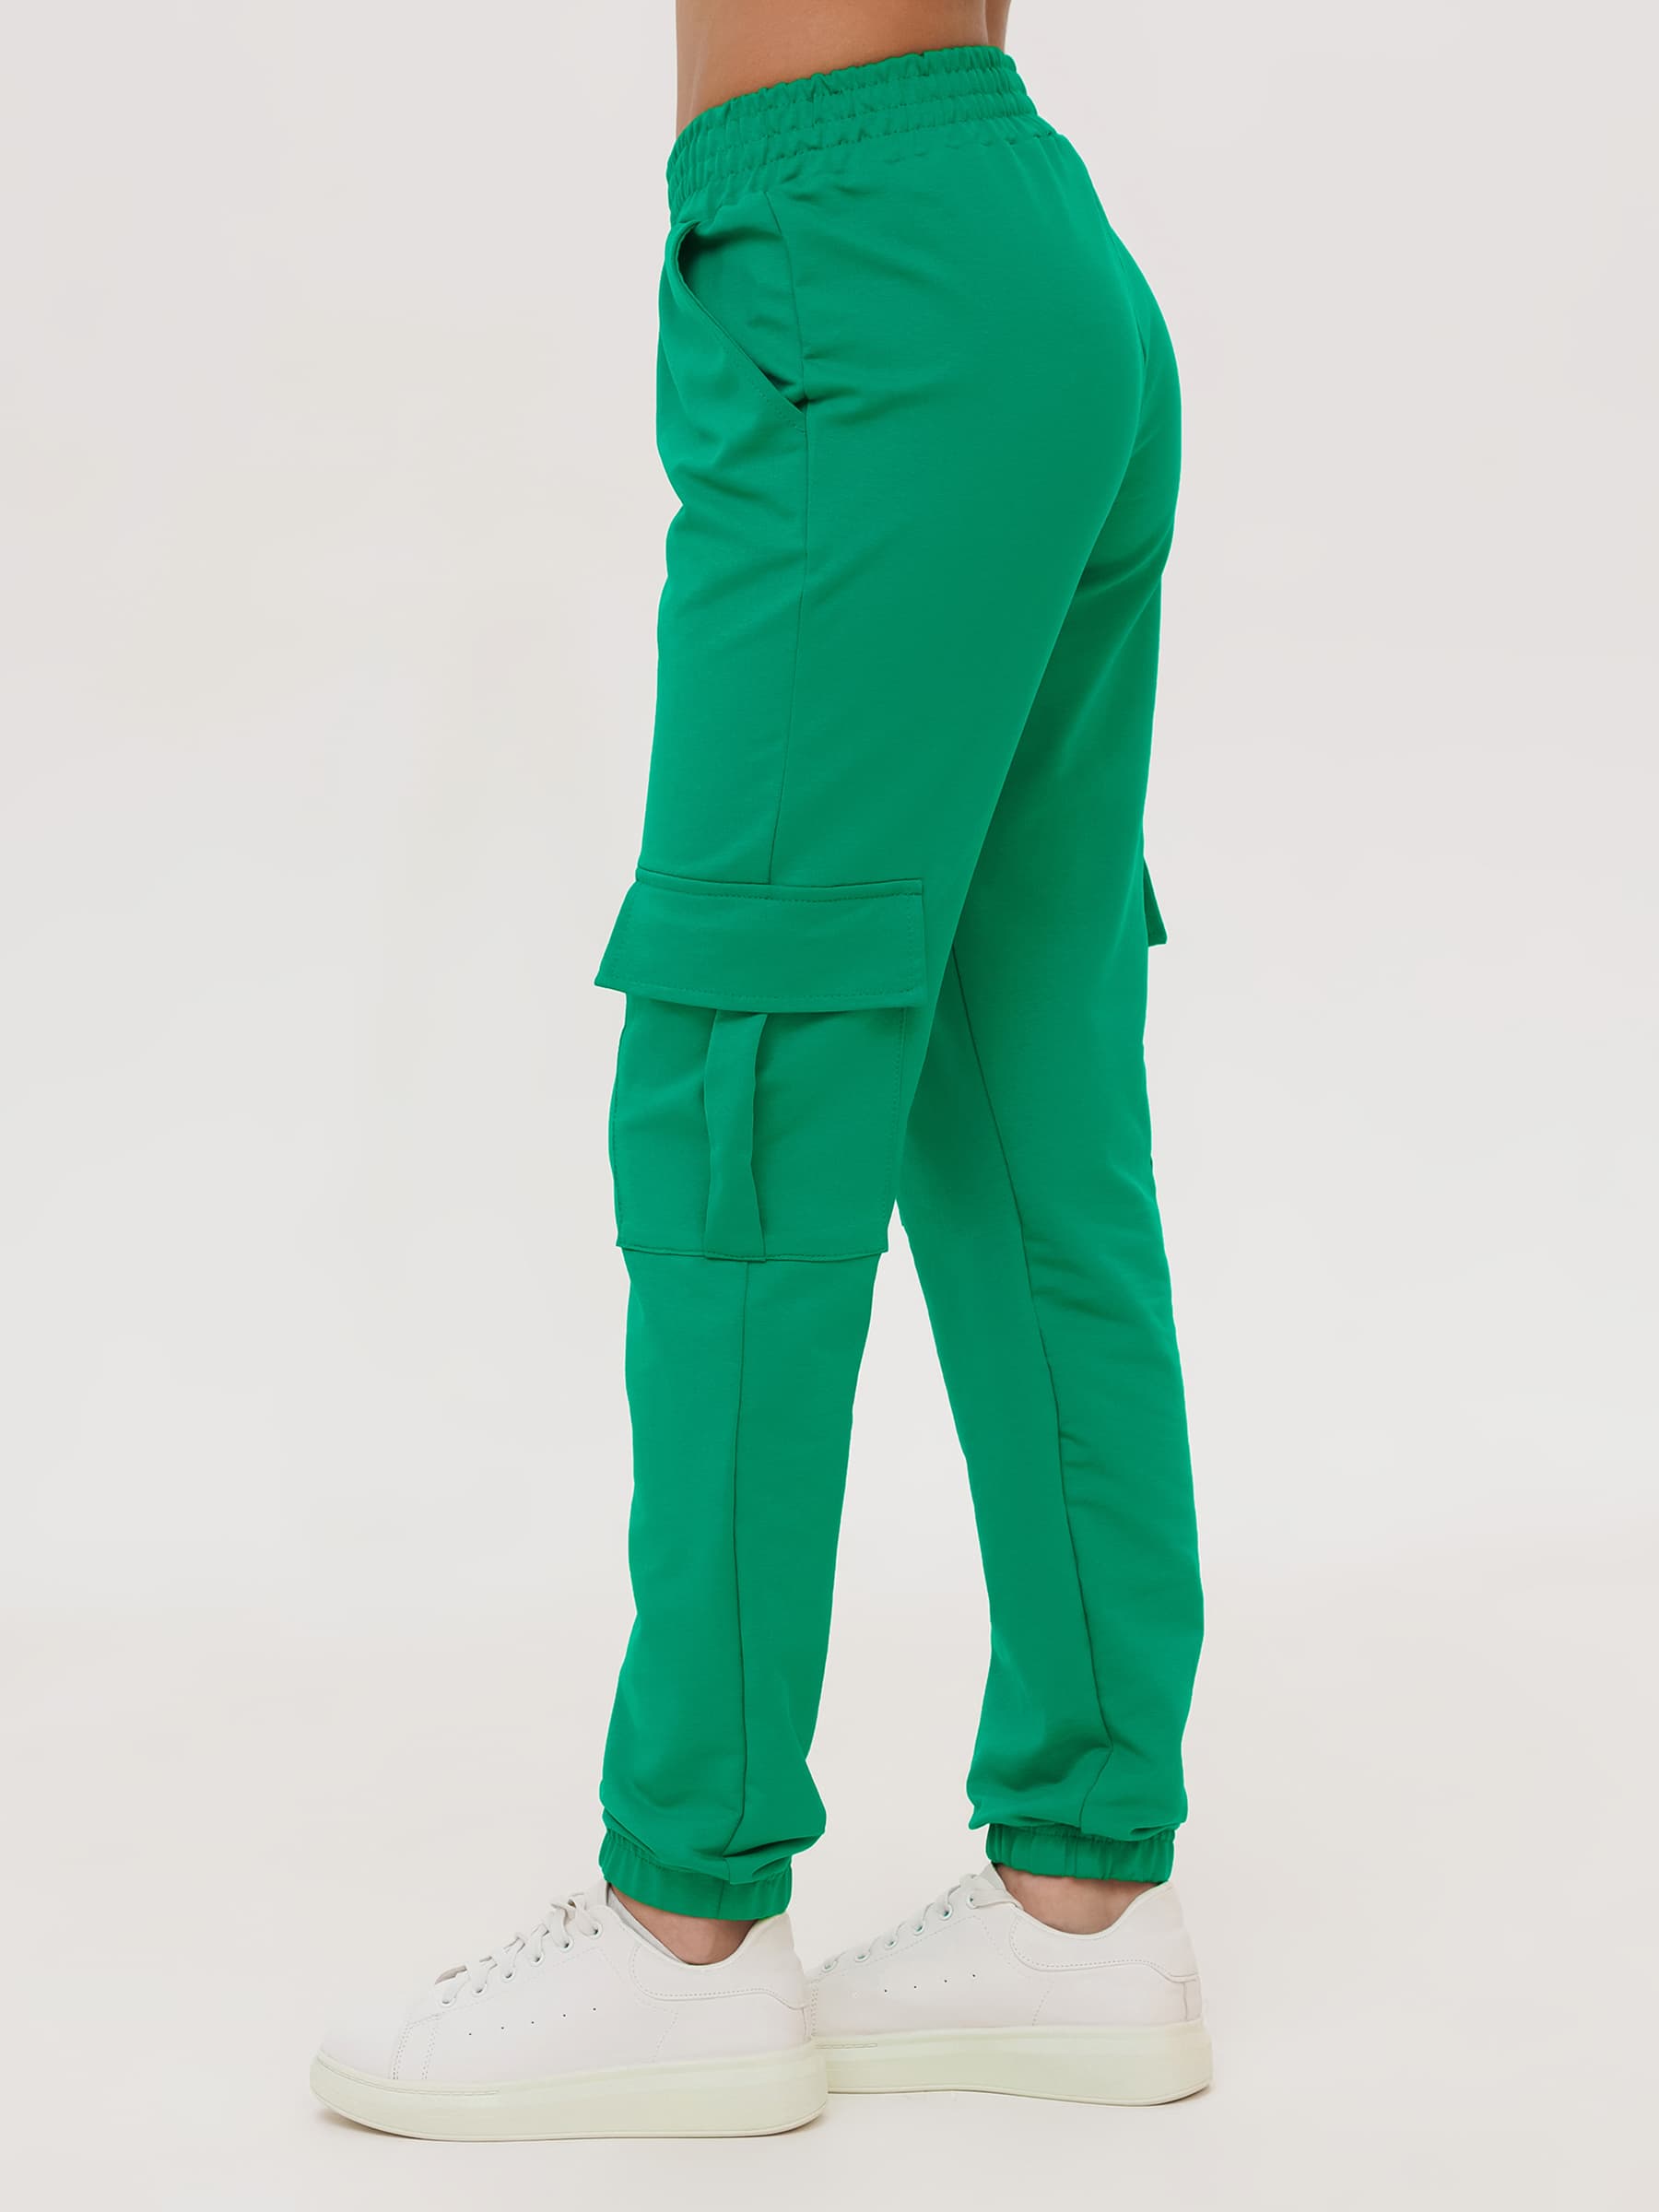 Жен. брюки повседневные арт. 23-0524 Зеленый р. 42 Моделлини, размер 42 - фото 9